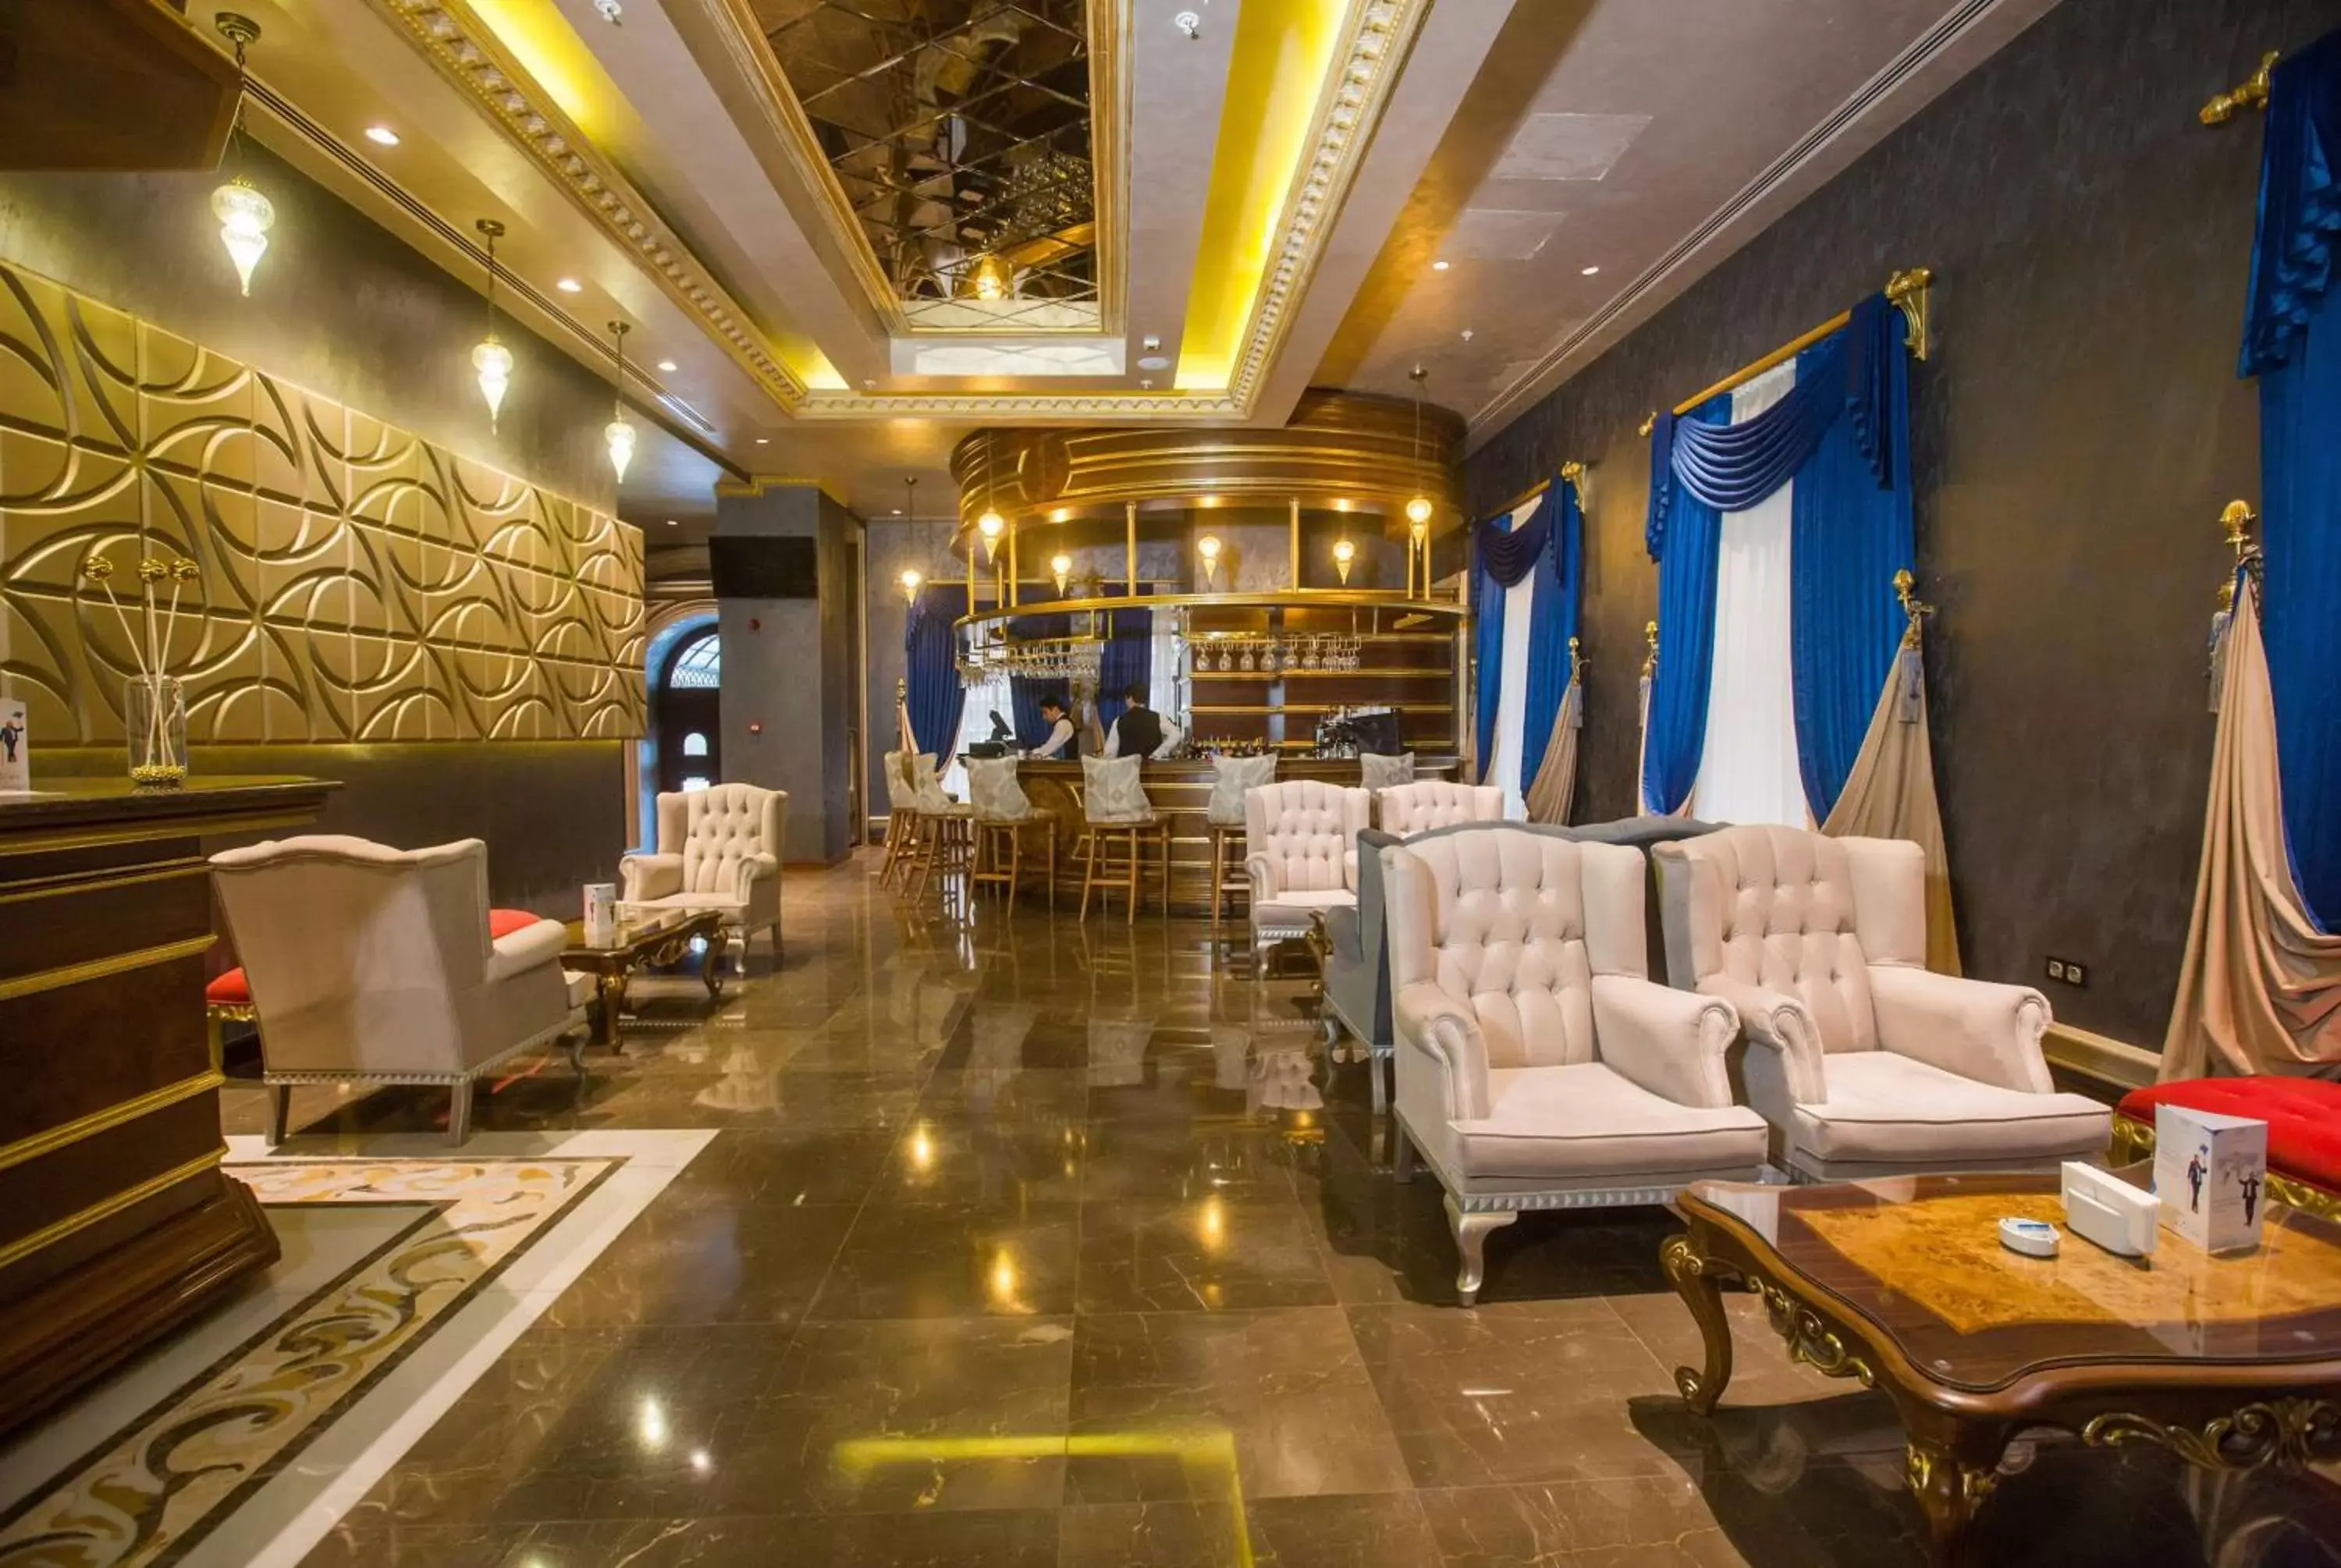 Lobby or reception in Wyndham Batumi